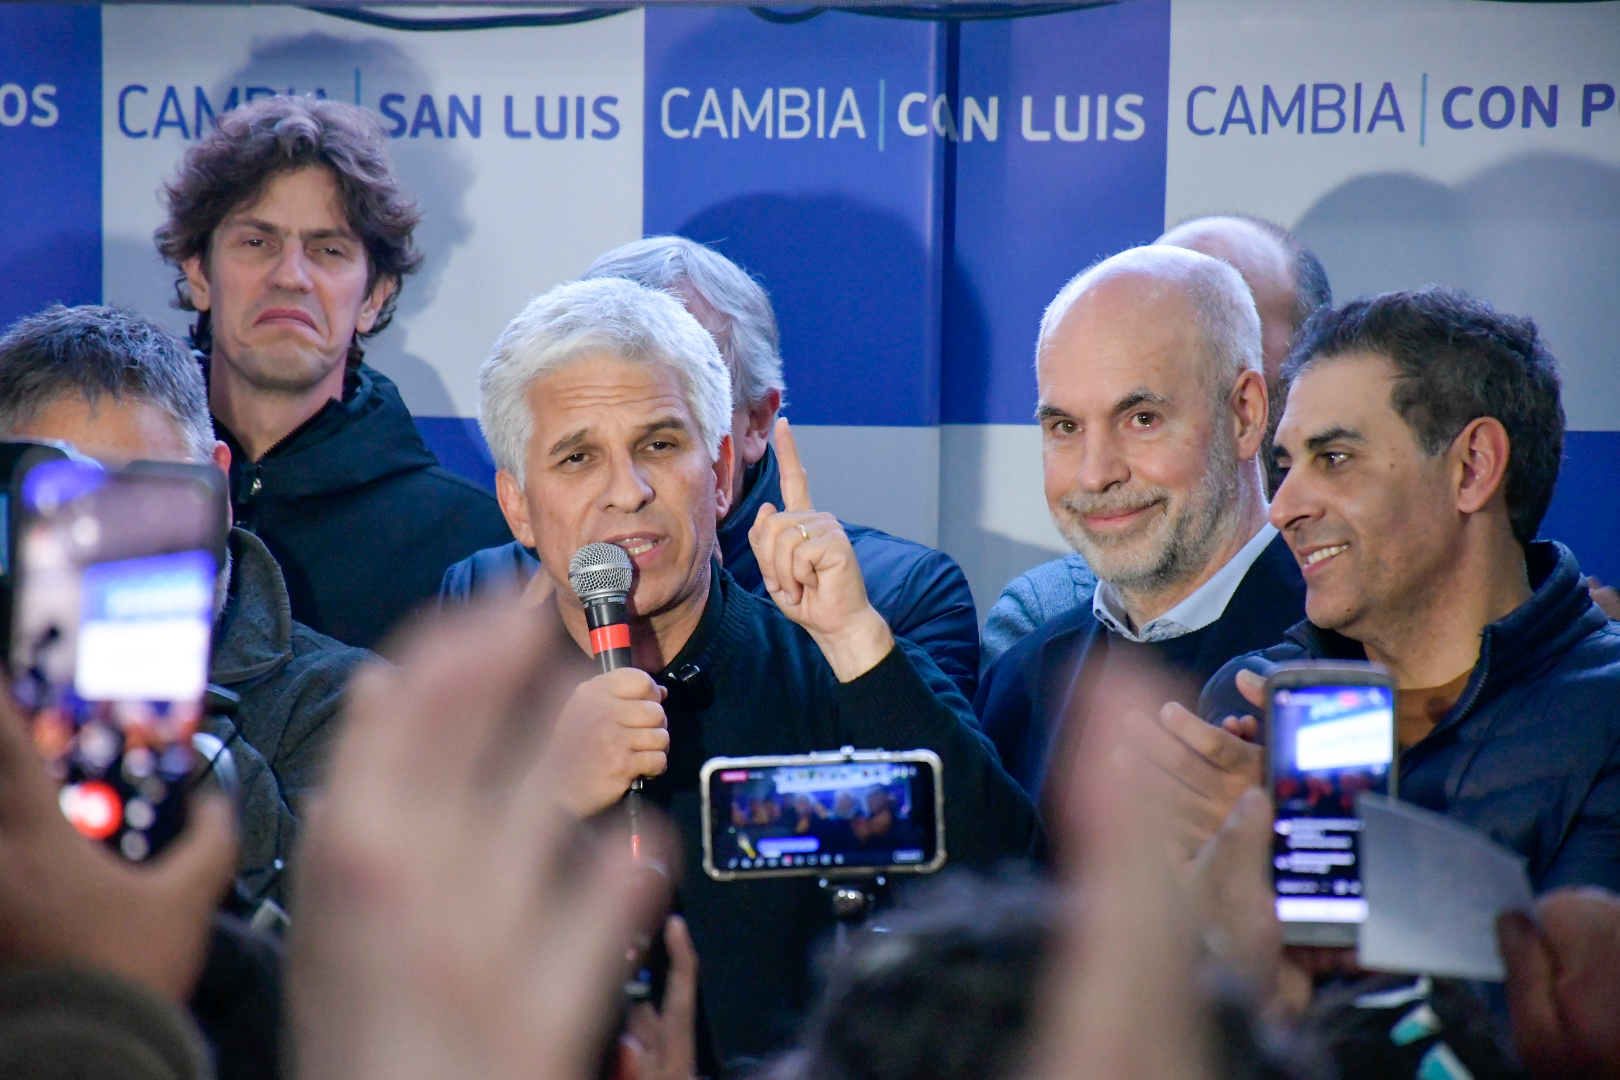 Claudio Poggi se impuso sobre el candidato de Alberto Rodríguez Saá en San Luis